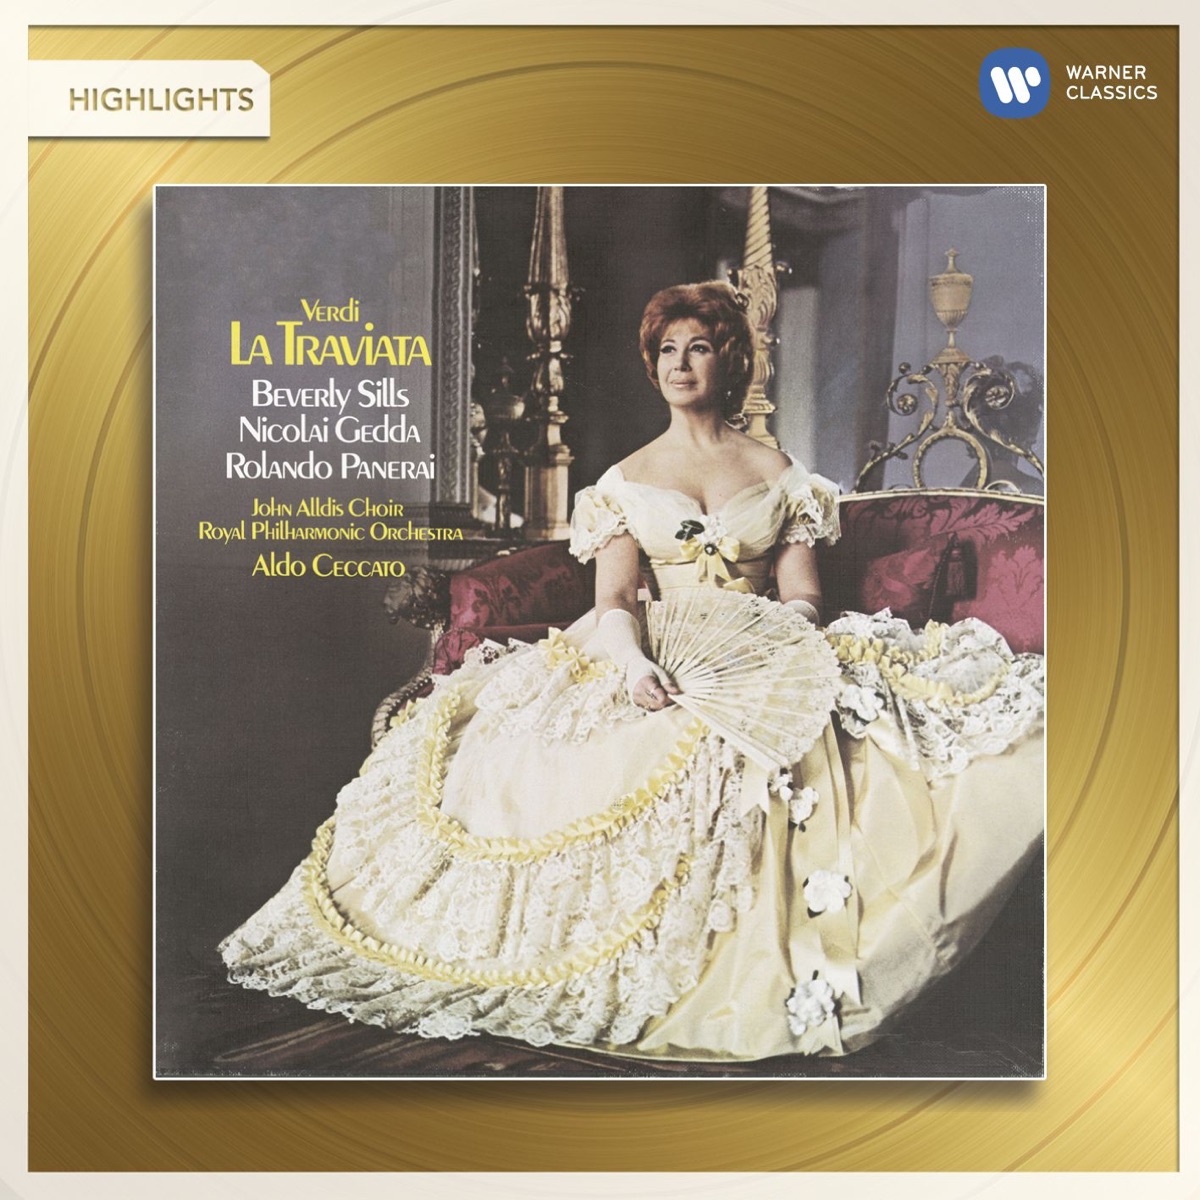 Verdi: La Traviata (Highlights) by Aldo Ceccato, Nicolai Gedda, Rolando  Panerai & Beverly Sills on Apple Music